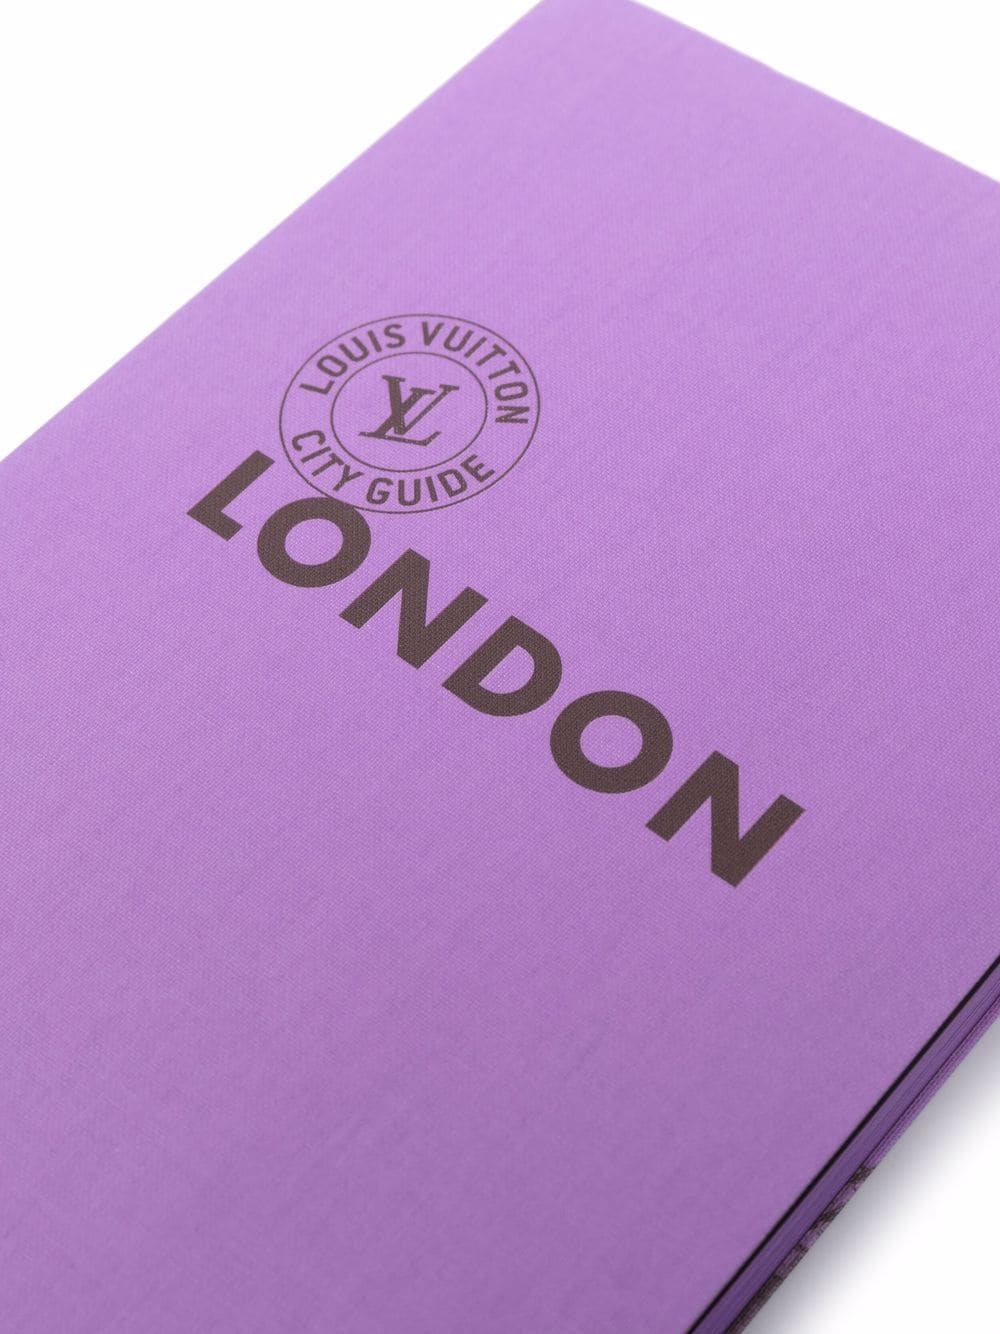 Louis Vuitton London City Guide - Farfetch